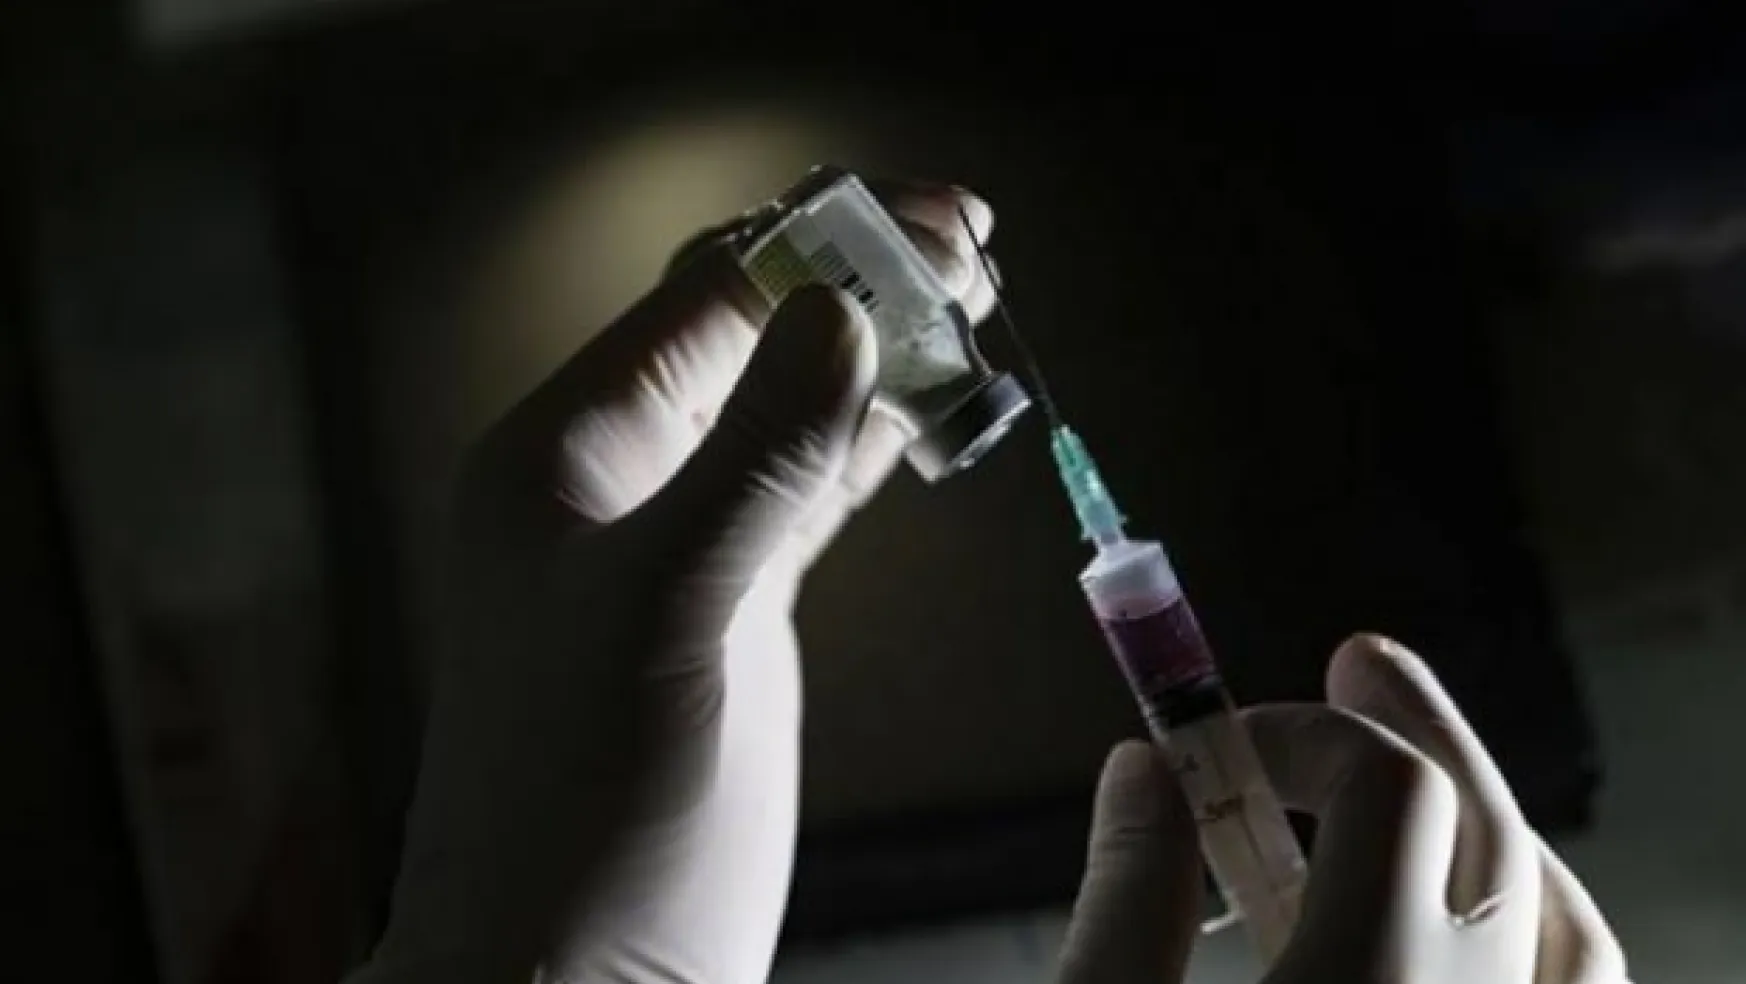 DSÖ'den koronavirüs açıklaması: Aşı tarihi verildi